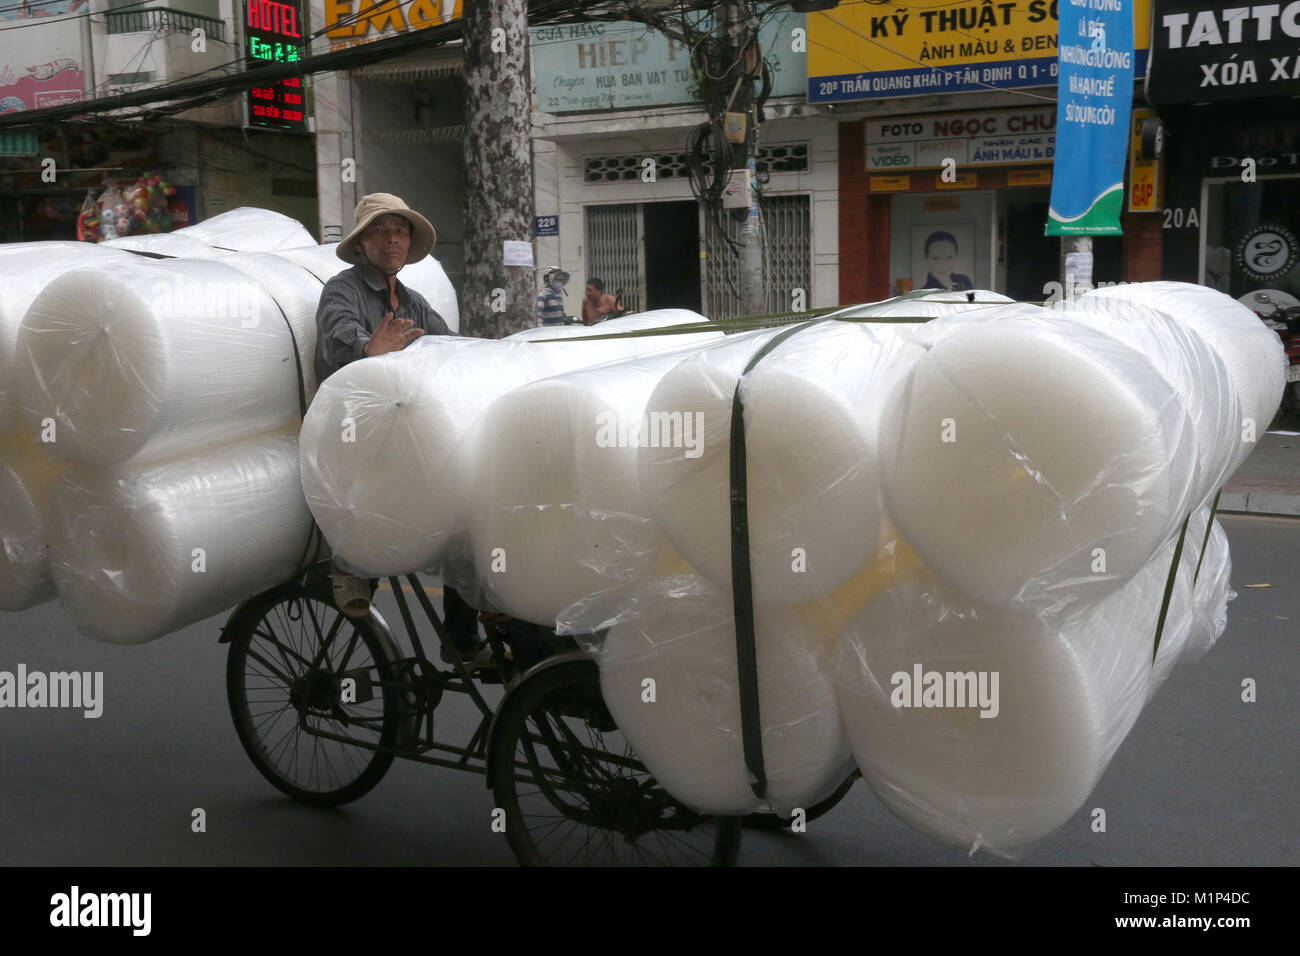 Mann Pedale eine Fahrradrikscha, mit Rollen auf einer Straße geladen, Ho Chi Minh City, Vietnam, Indochina, Südostasien, Asien Stockfoto